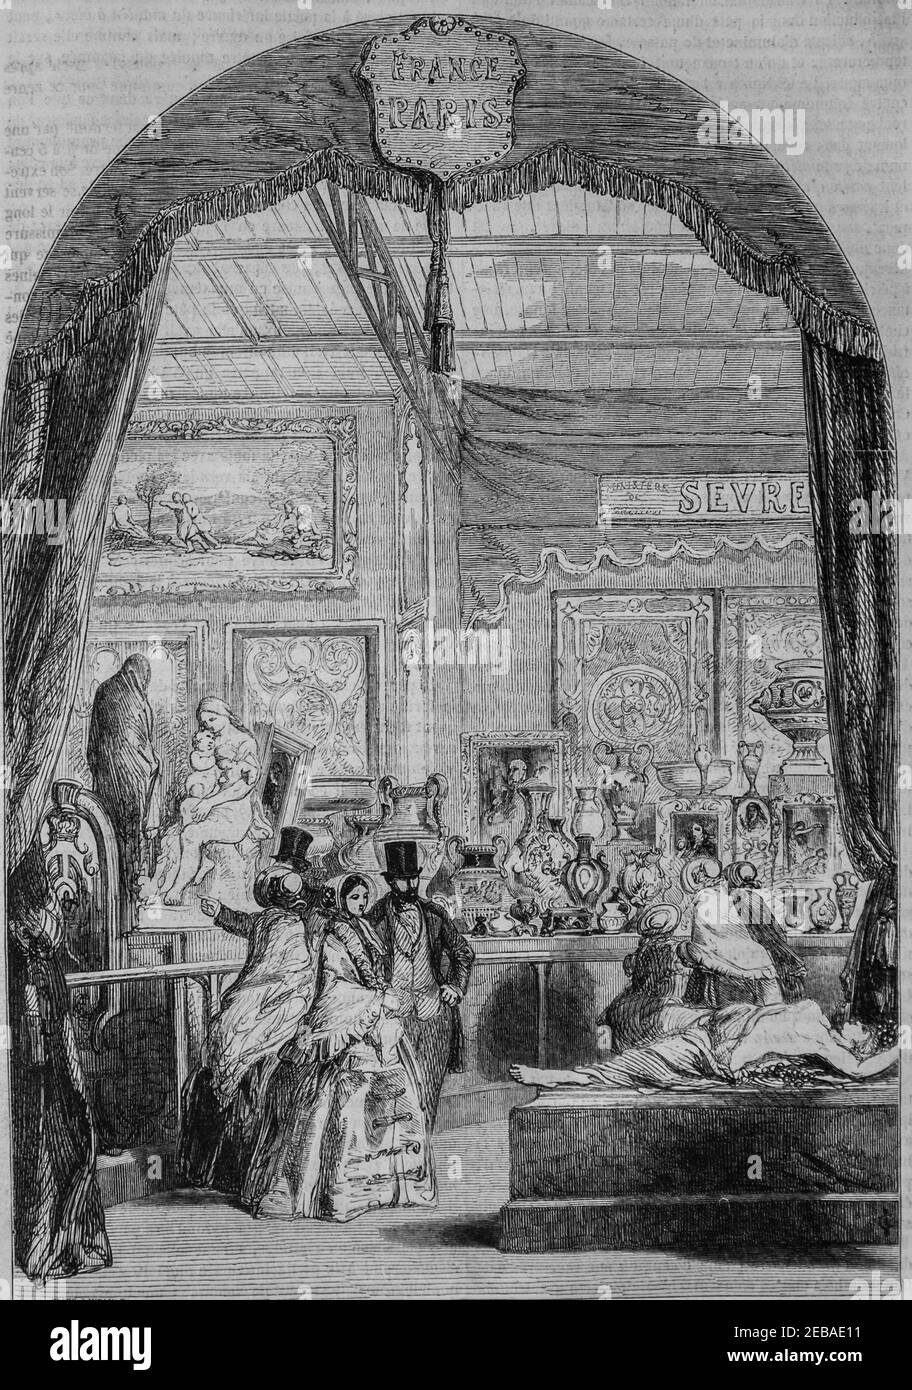 Exposition des produits de la manufaktur de sevre au palais de Cristal , le Magazine pittoresque par edouard charton 1855 Stockfoto